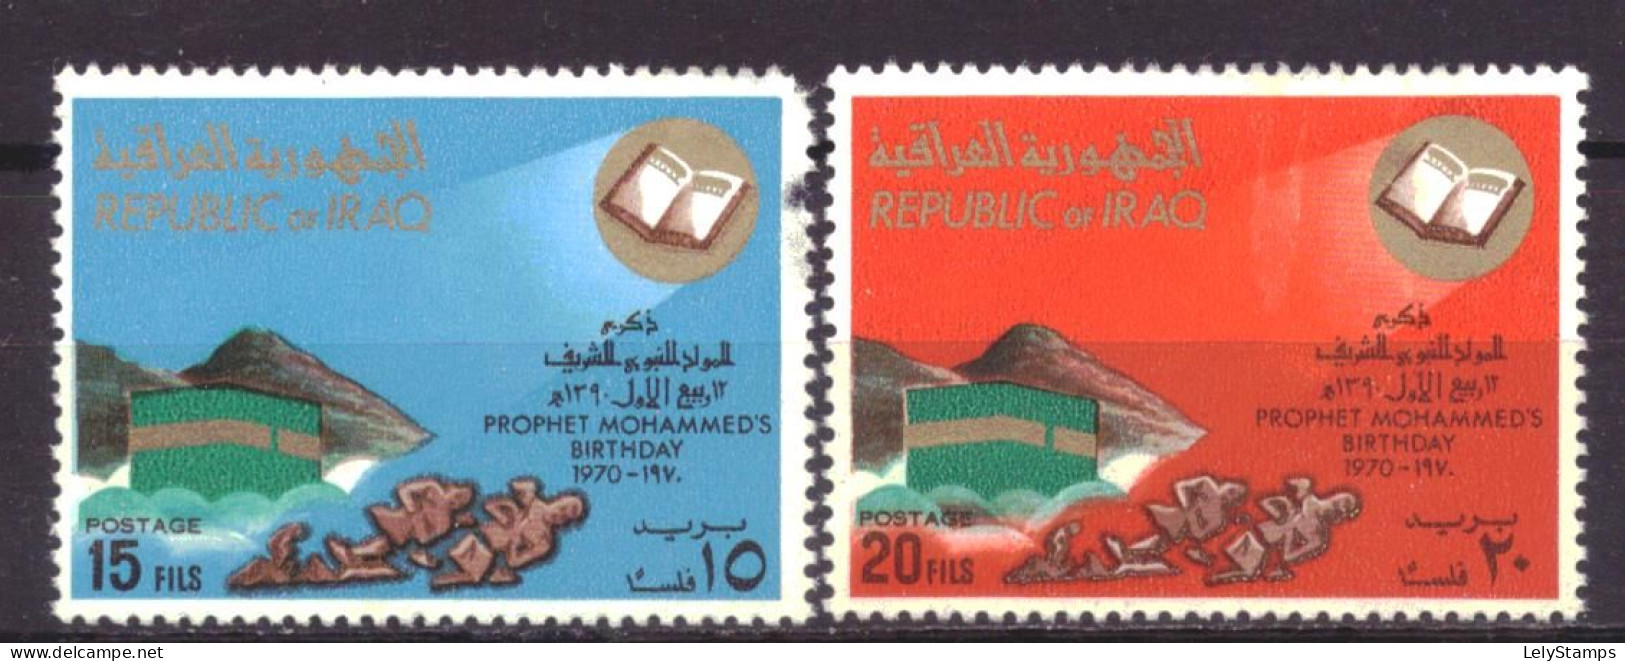 Irak / Iraq 607 & 608 MH * Birthday Mohammed (1970) (B-Choice) - Irak